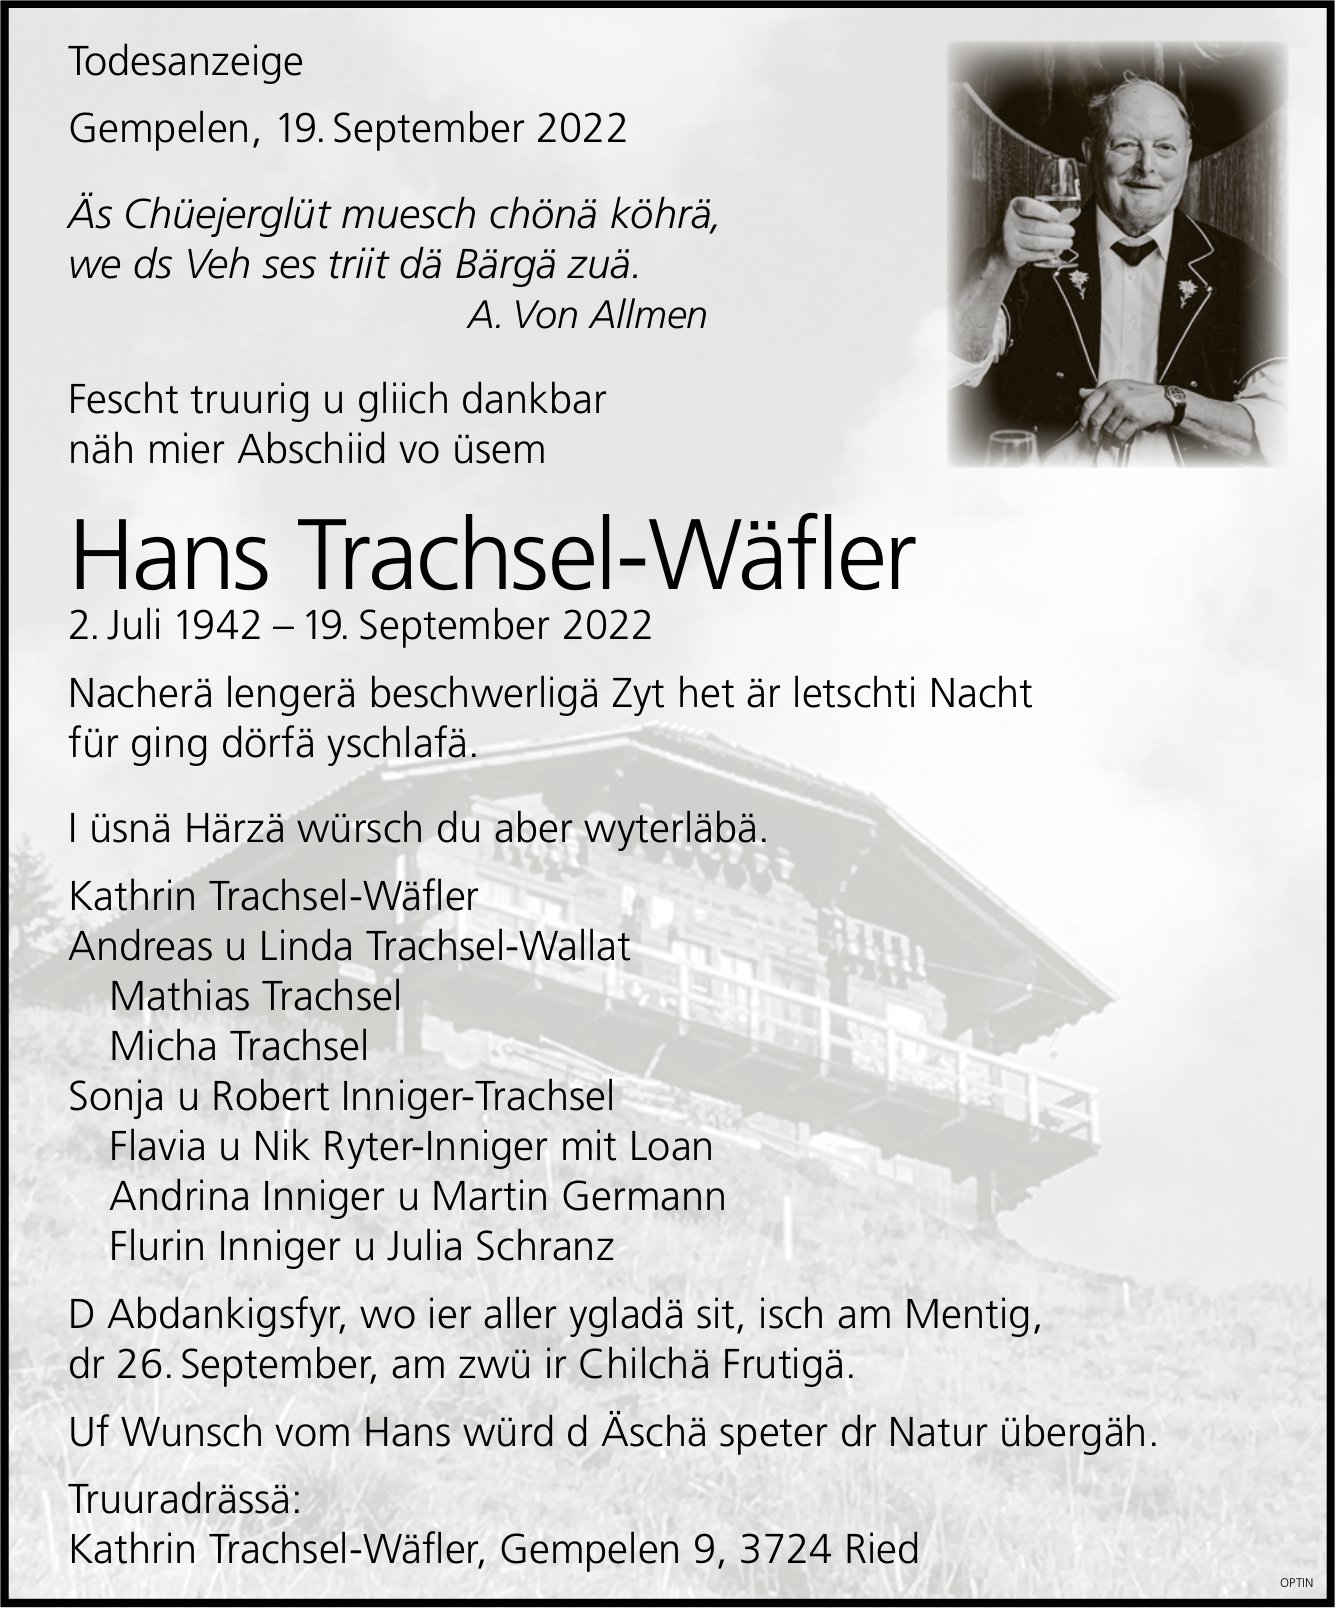 Hans Trachsel-Wäfler, September 2022 / TA